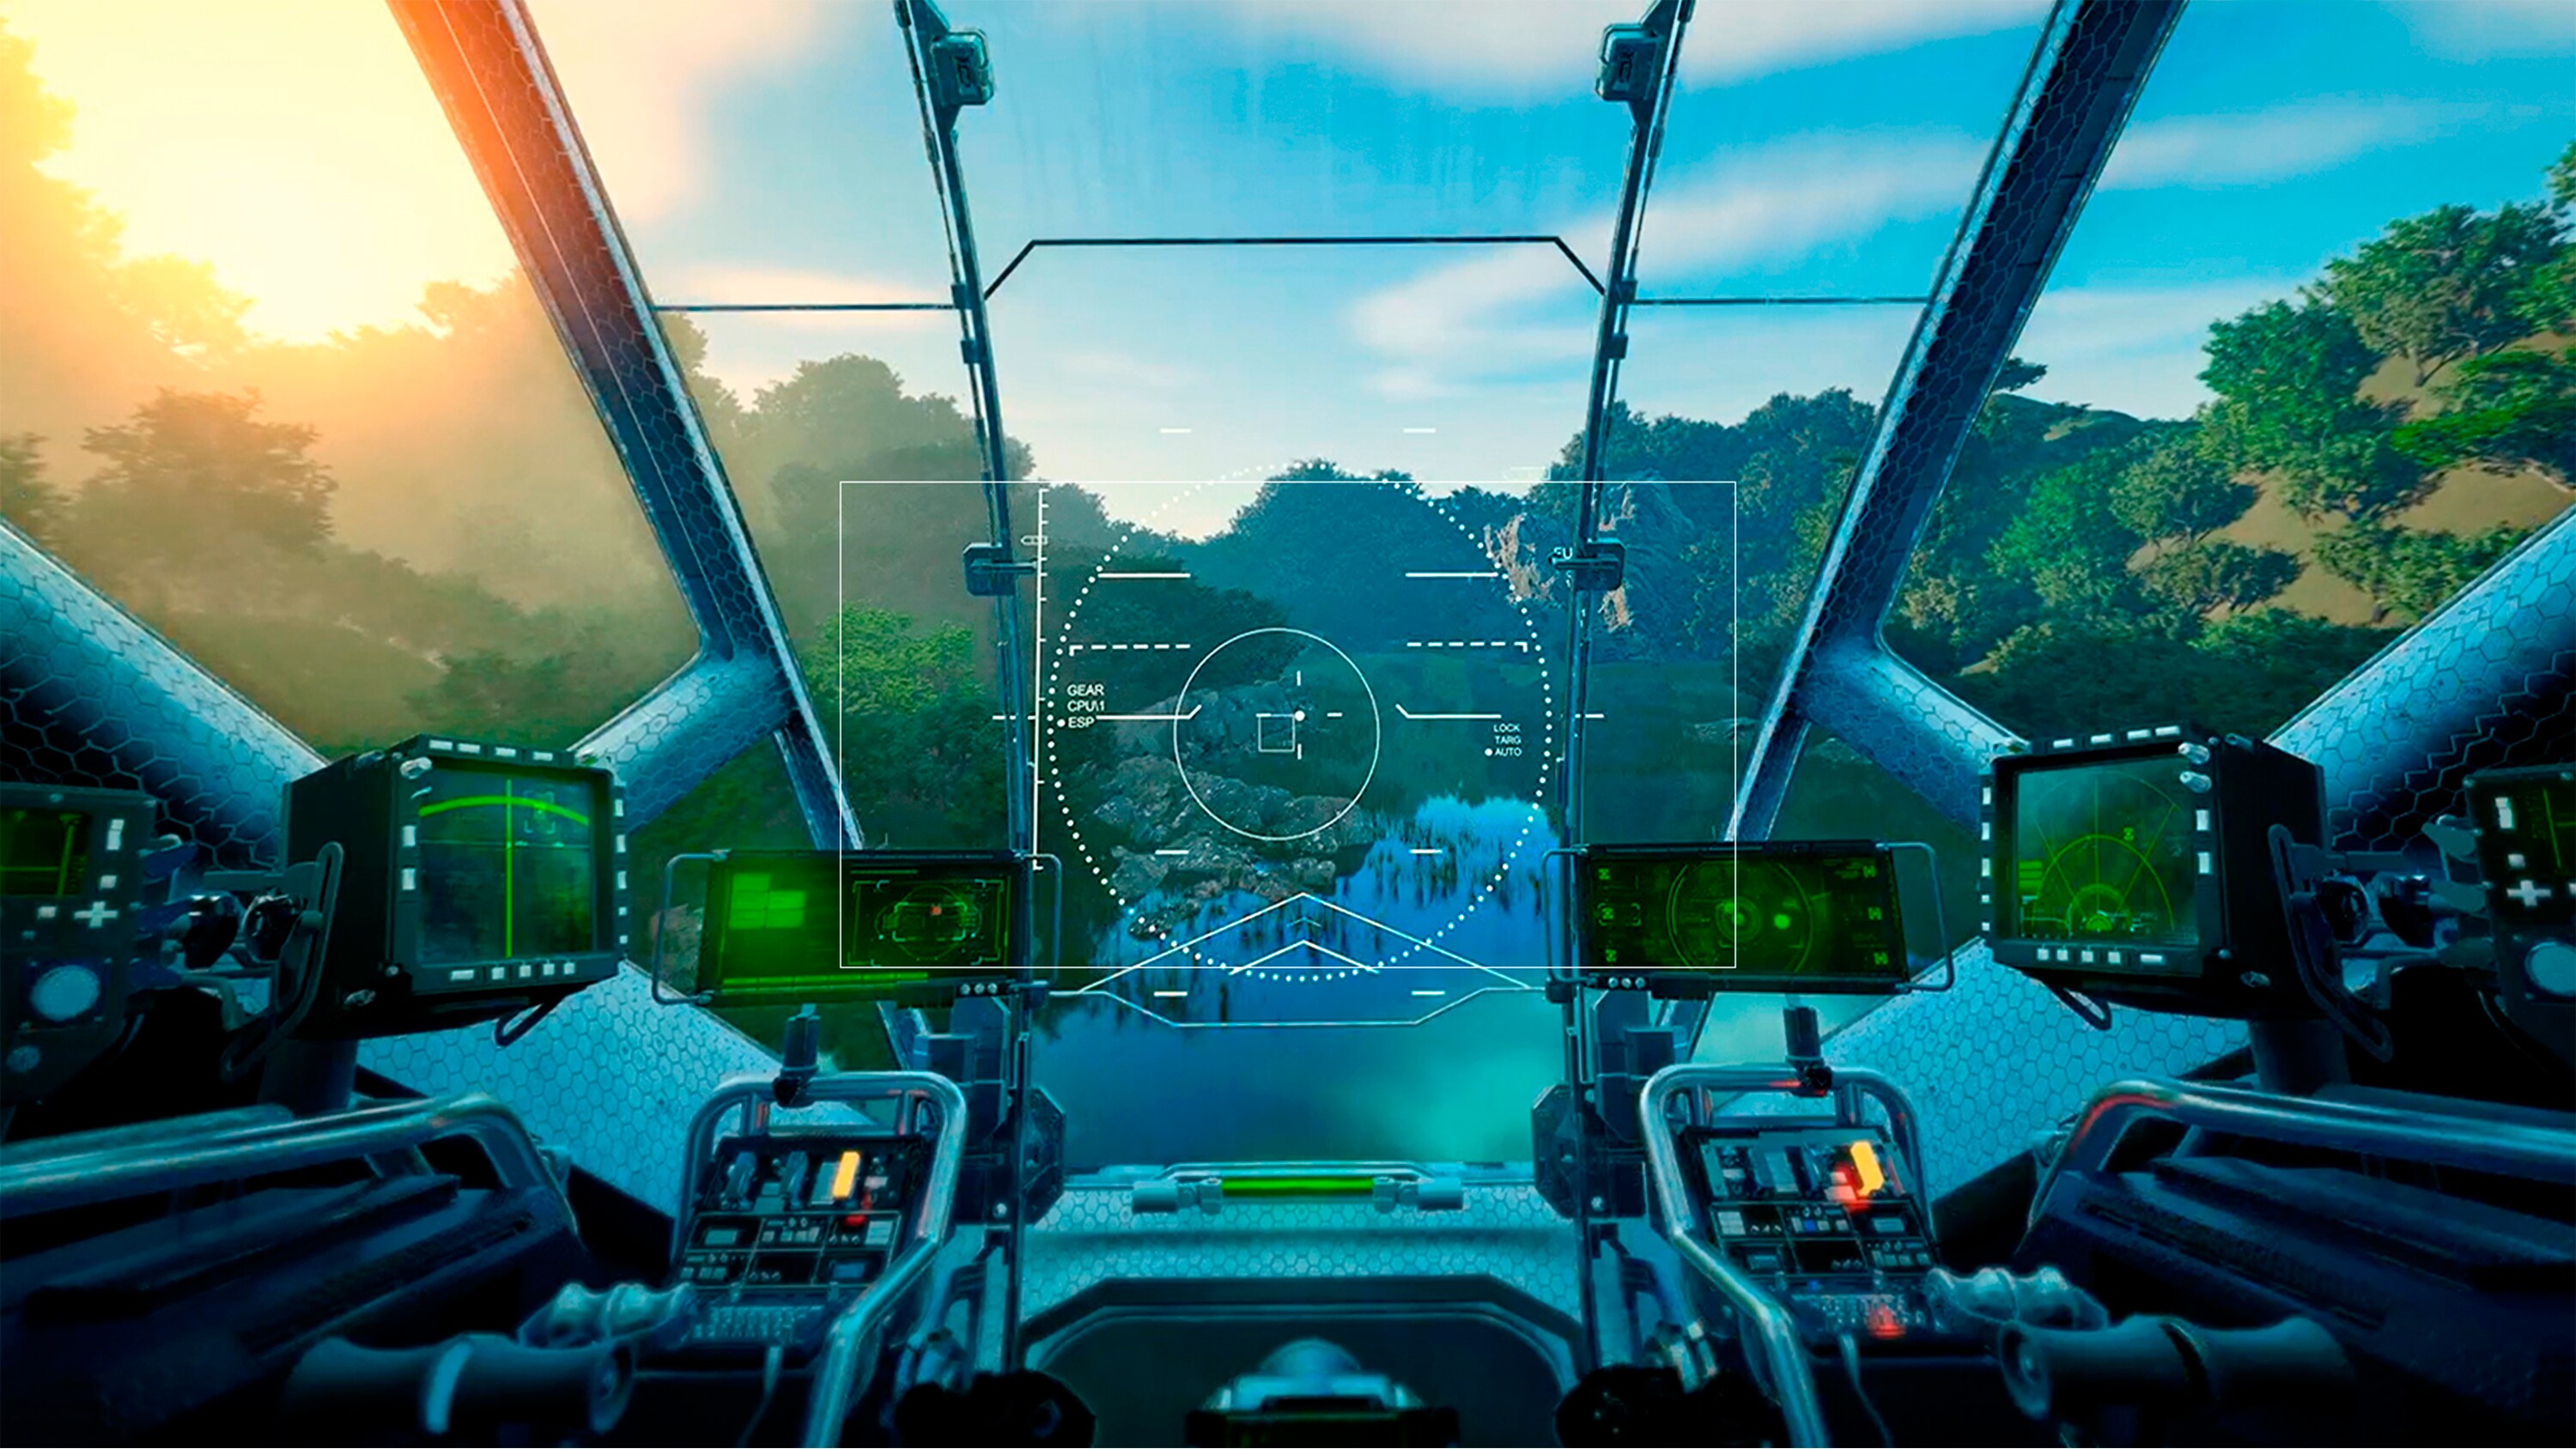 Game-afbeelding van een vliegtuigcontrolepaneel.